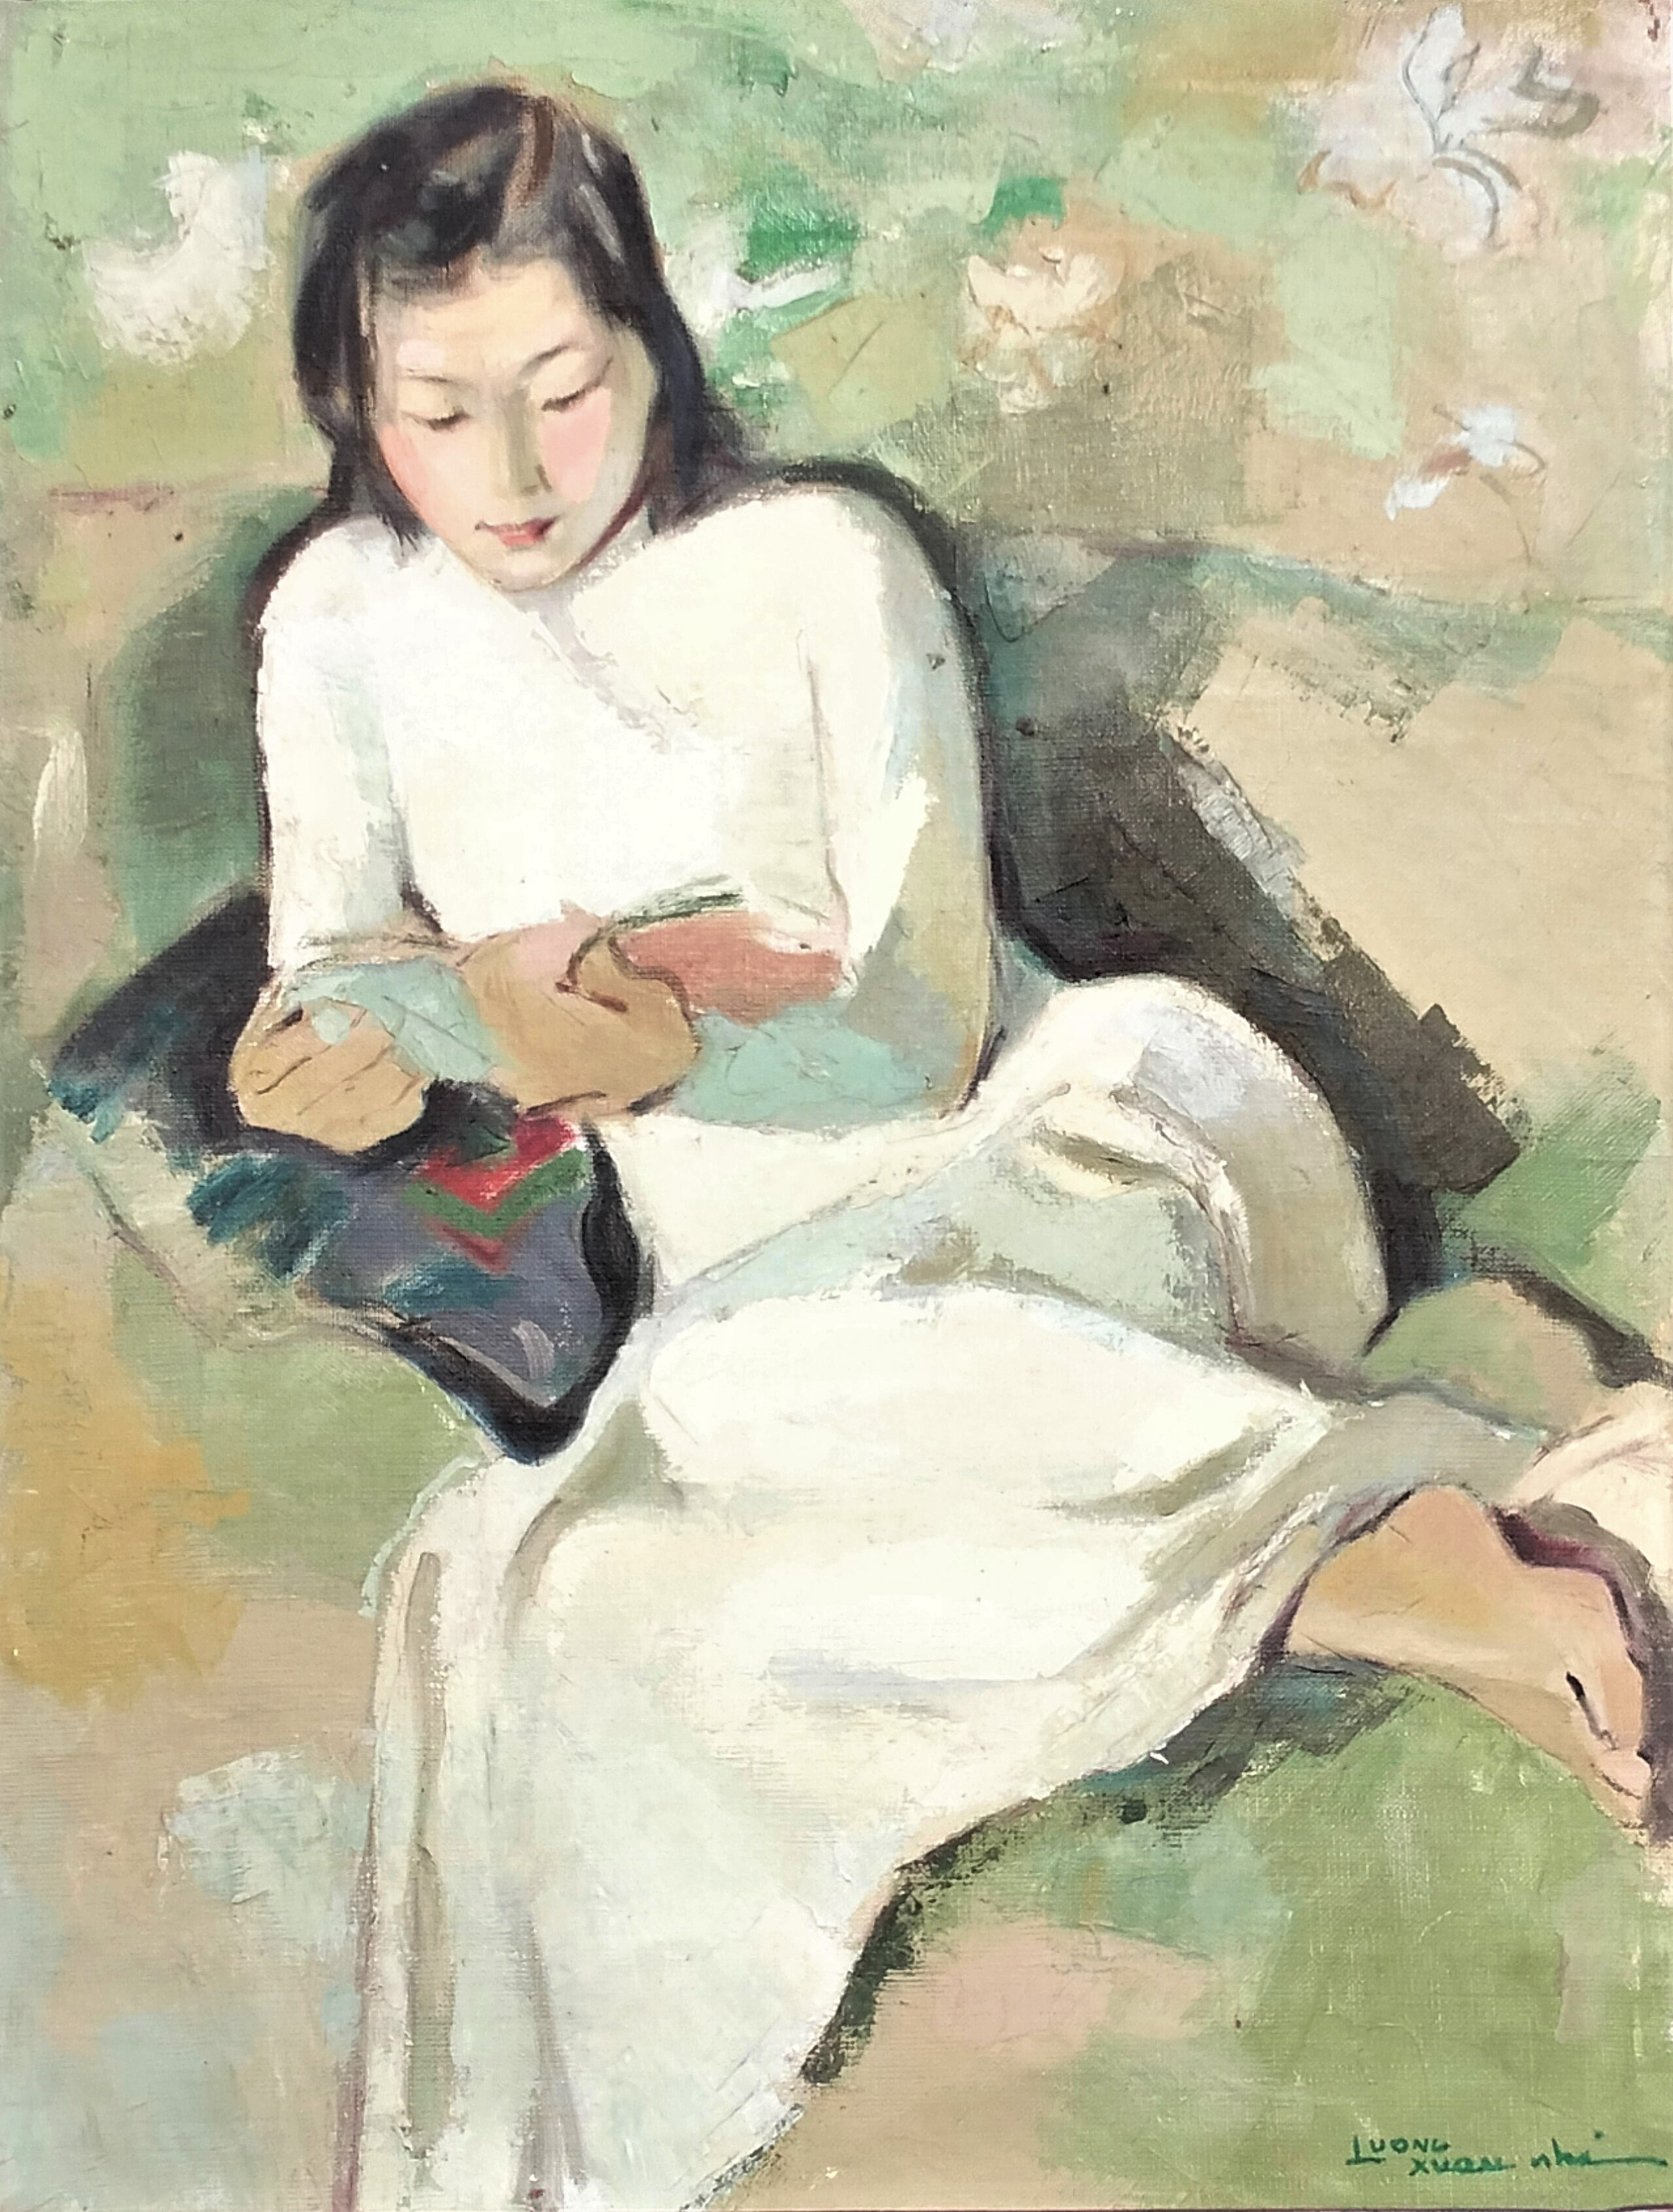 Tranh sơn dầu trên canvas "Thiếu nữ đọc sách" của họa sĩ Lương Xuân Nhị (1914 - 2006). Ông là giáo sư, nhà giáo nhân dân, họa sĩ nổi tiếng với những bức chân dung thiếu nữ và phong cảnh, sinh hoạt bình dị.